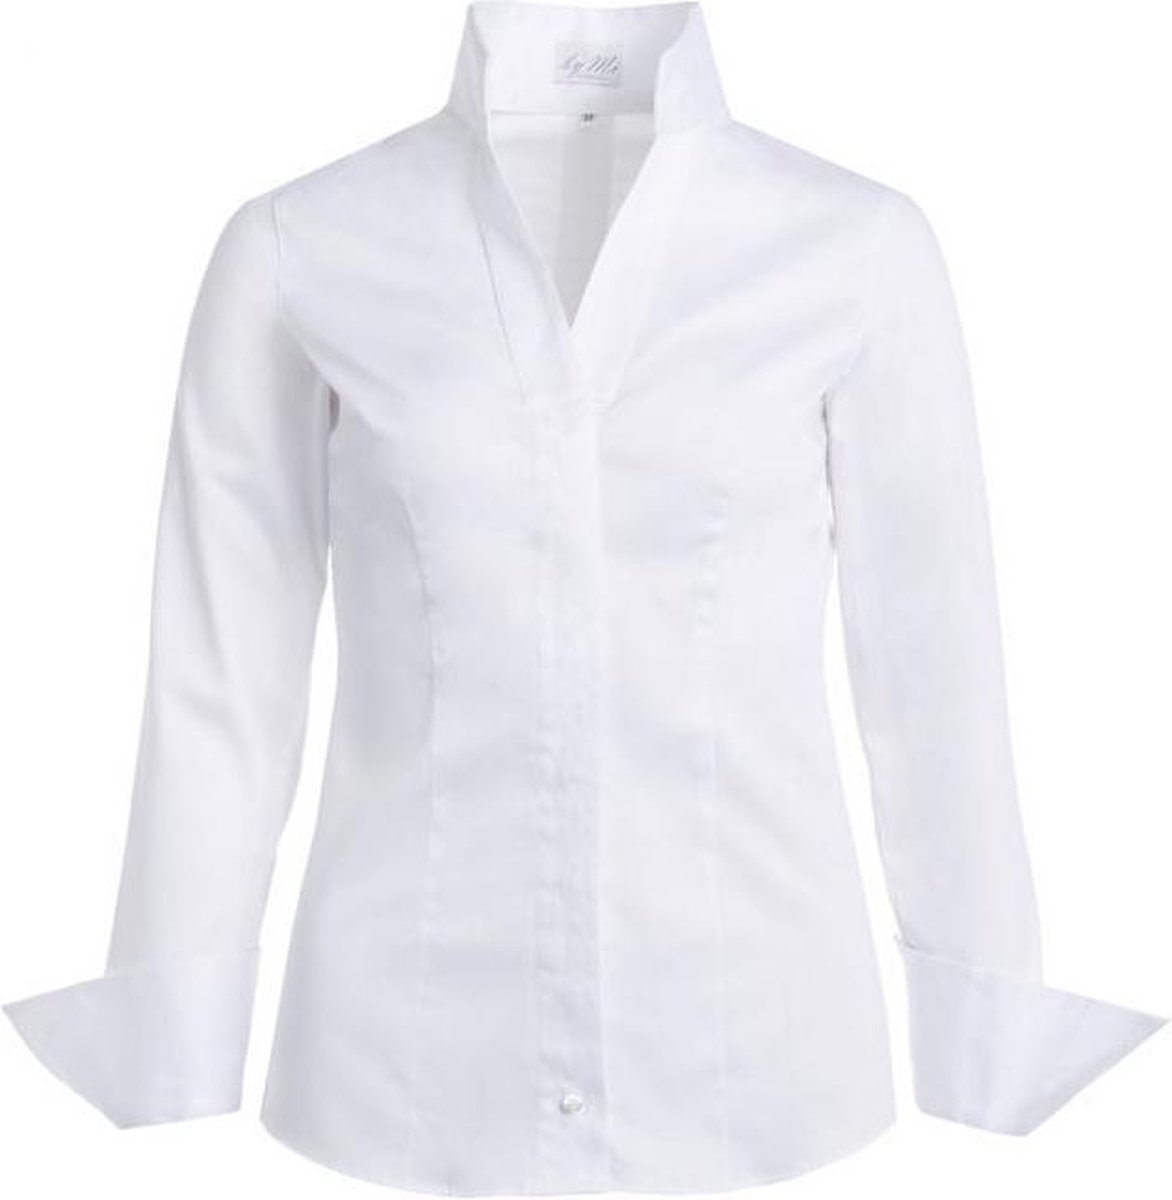 Dames blouse wit volwassen lange mouw kelkkraag sta kraagje egyptian cotton katoen luxe chic maat 44